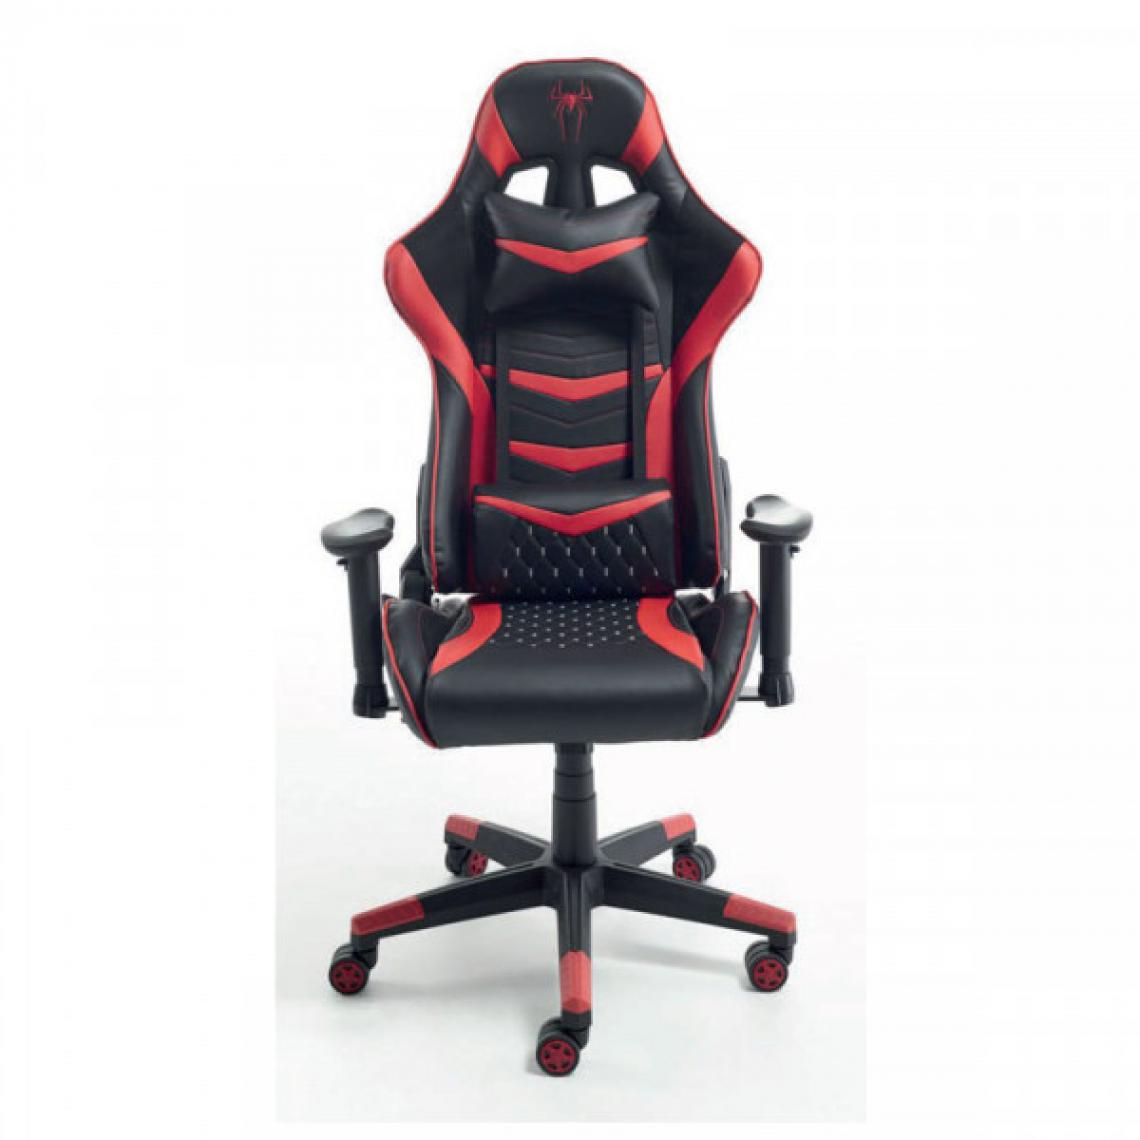 Dansmamaison - Chaise de bureau gamer Noir/Rouge - SPIDER - L 66 x l 53 x H 121 cm - Bureaux